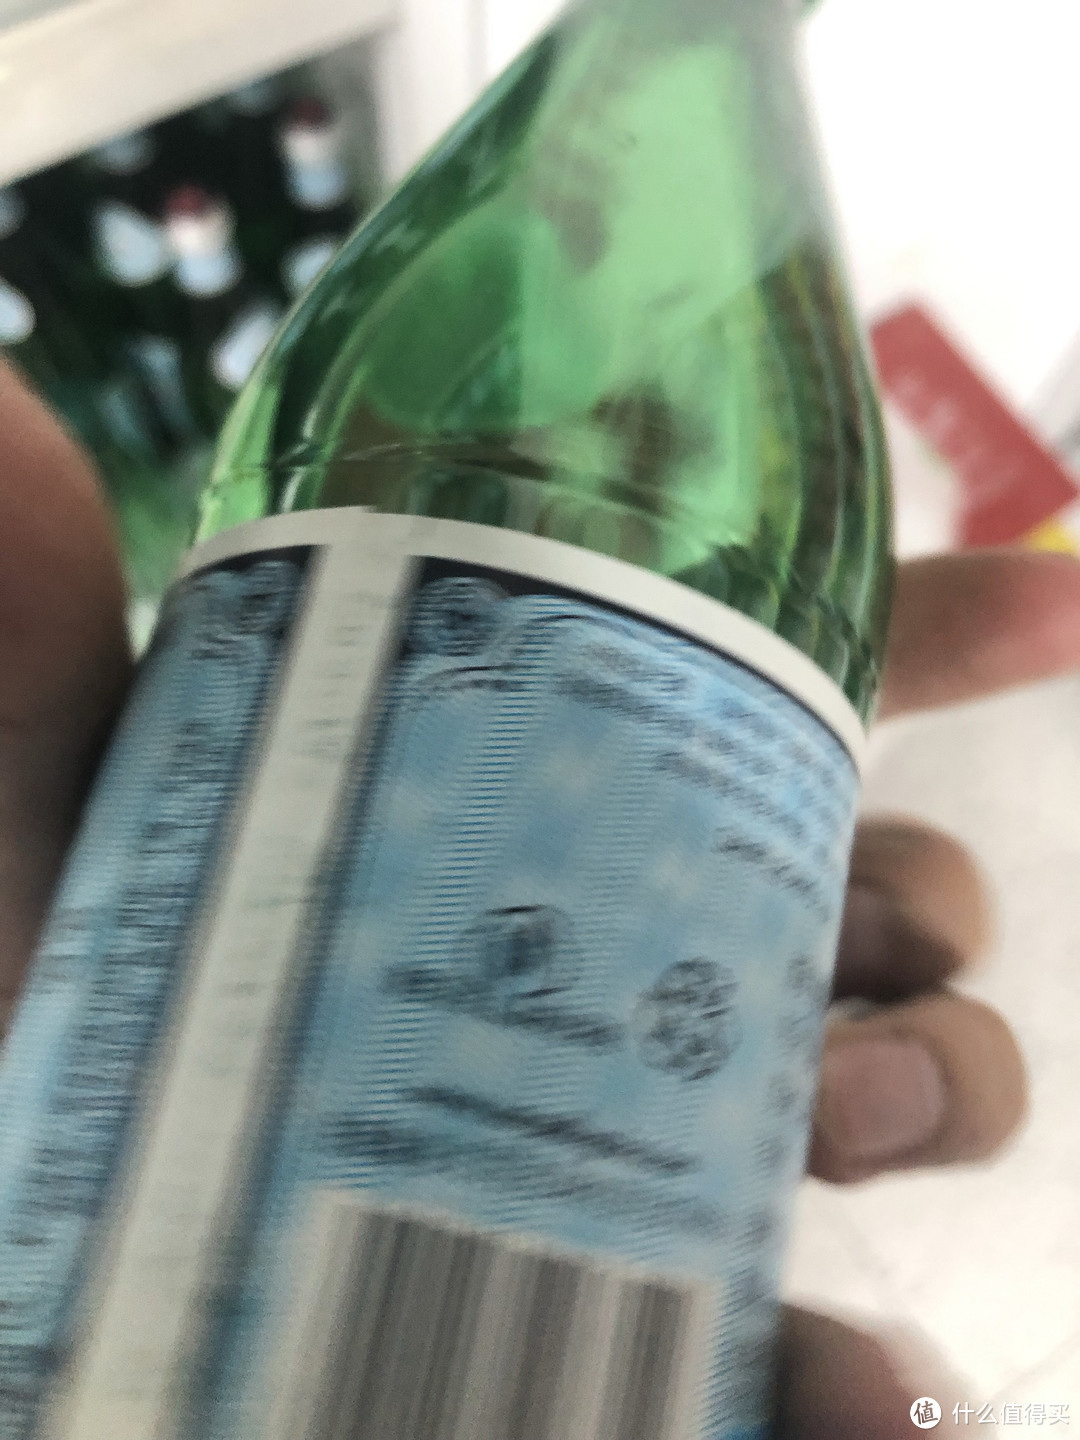 这个绿瓶气泡水挺好喝的